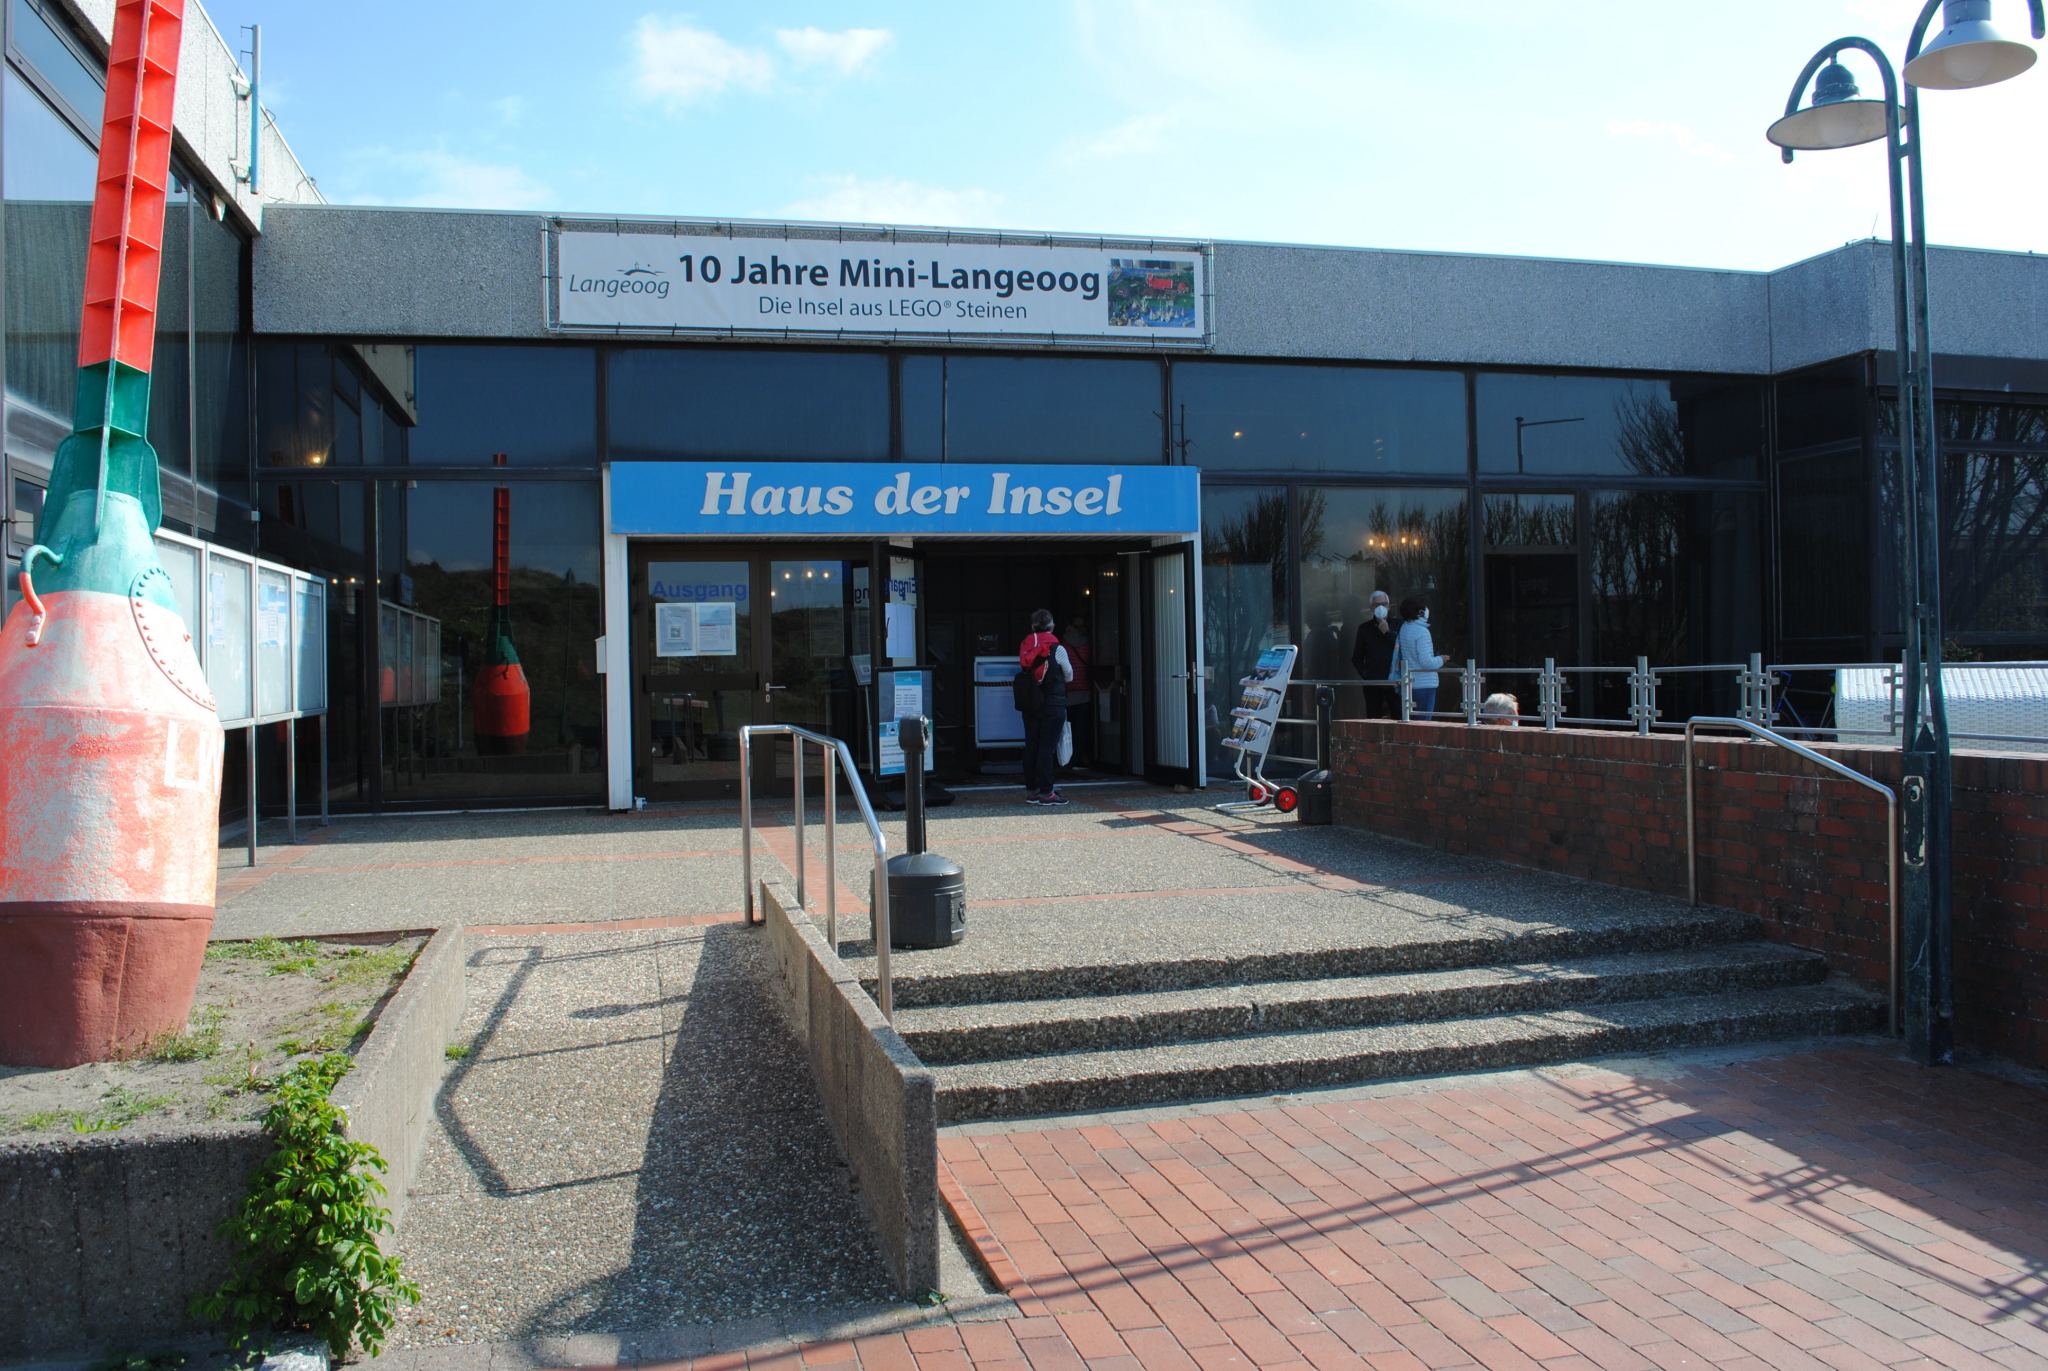 Touristinformation Langeoog im Haus der Insel